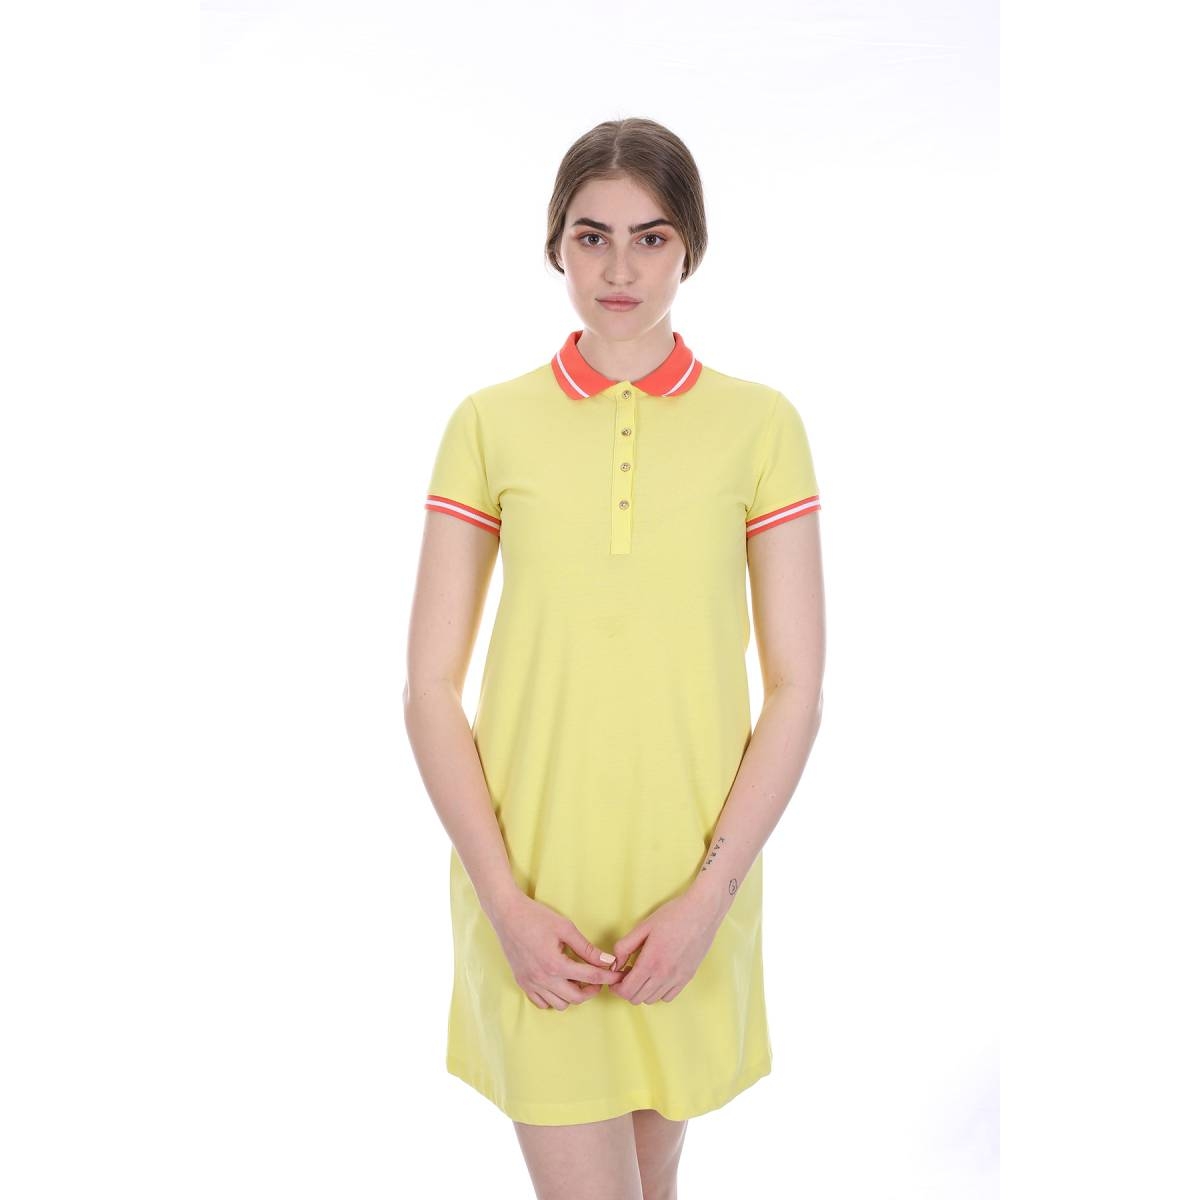 Flo Kadın Kısa Kol Polo Yaka Elbise Sarı/Yellow 21S181765SS20. 3